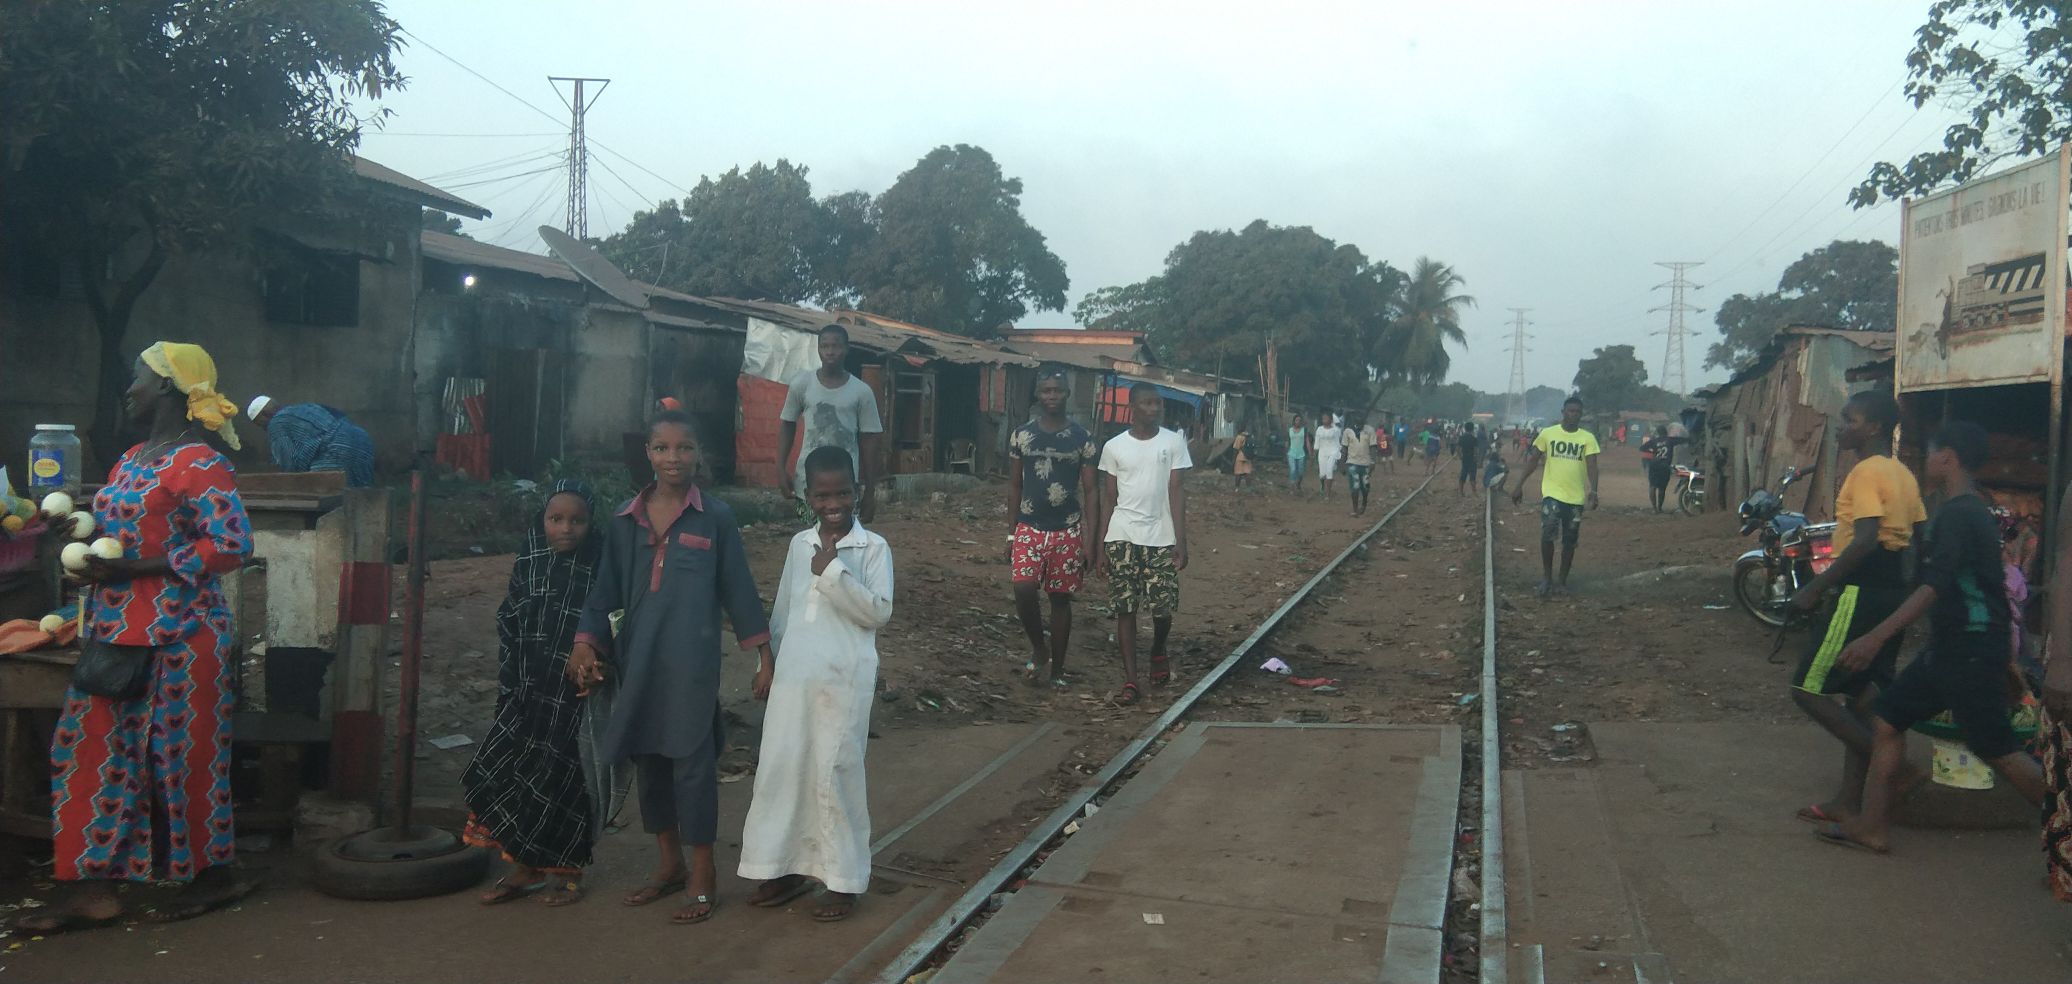 几内亚共和国（La République de Guinée），地处西非，全球最不发达地区之一。当地